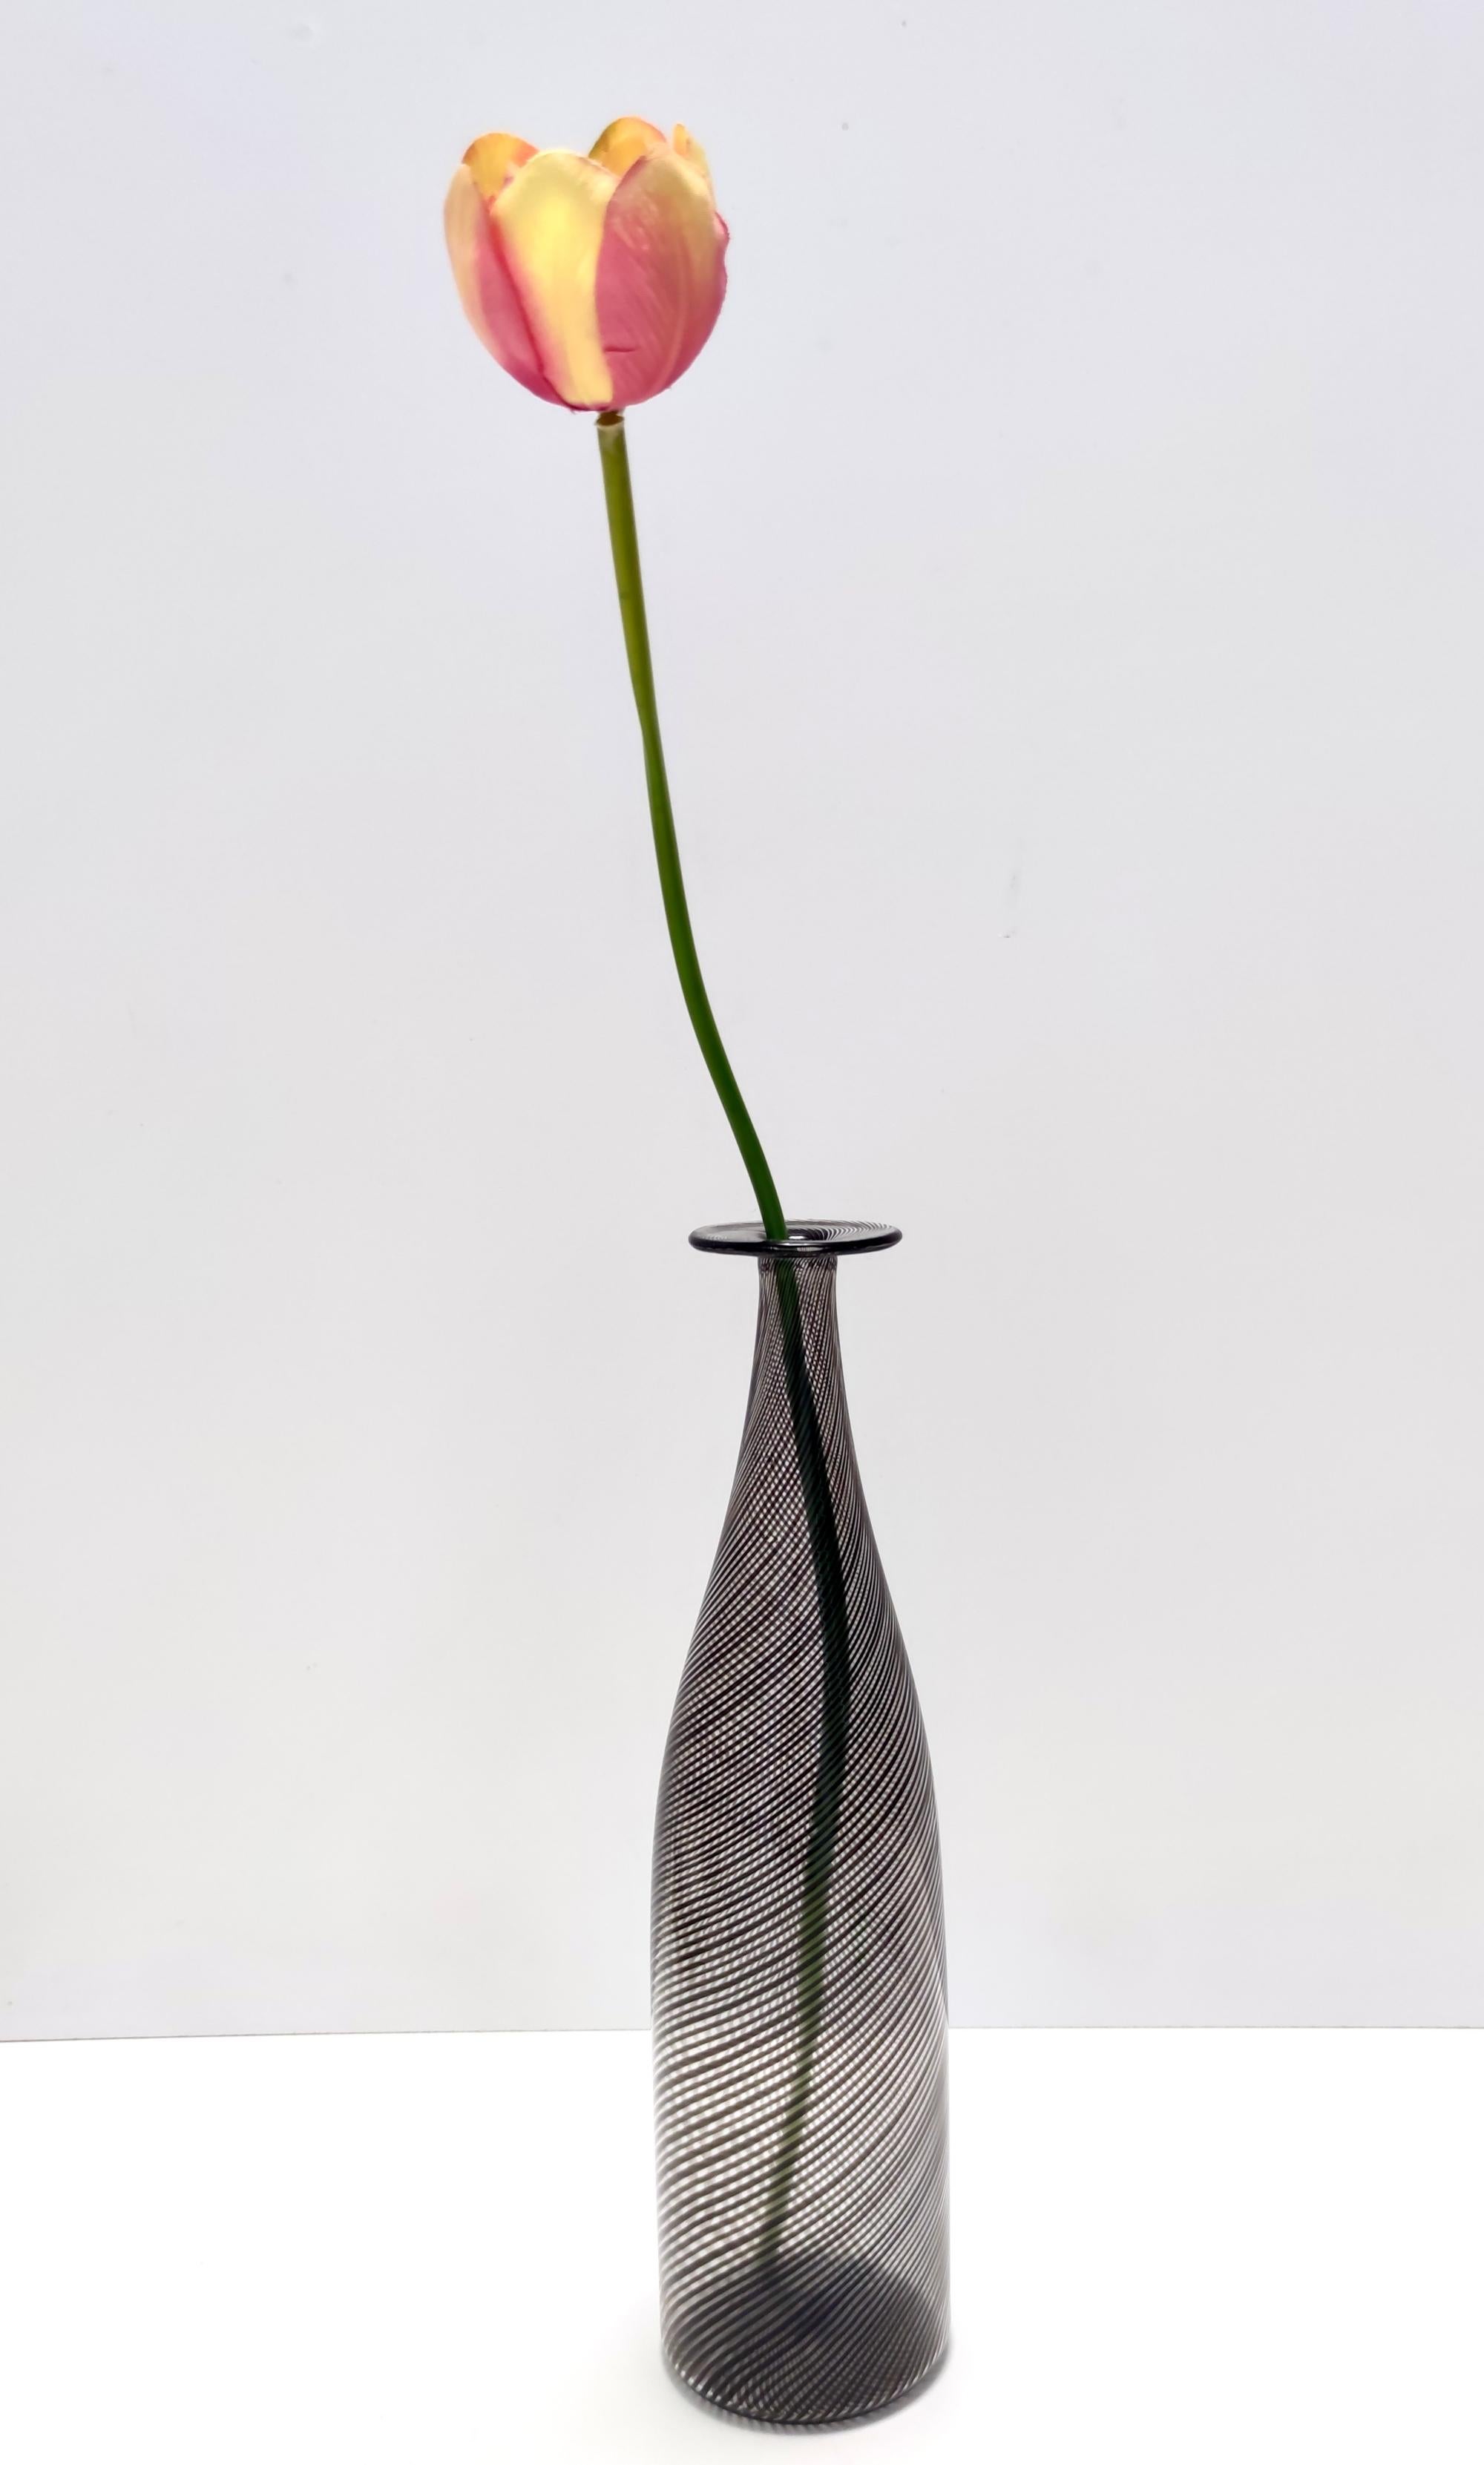 Fabriqué en Italie, années 1950 - 1960. 
Ce magnifique vase/bouteille est réalisé en verre soufflé à la bouche de Murano, noir et transparent, de type mezza filigrana.
Il s'agit d'une pièce vintage, elle peut donc présenter de légères traces